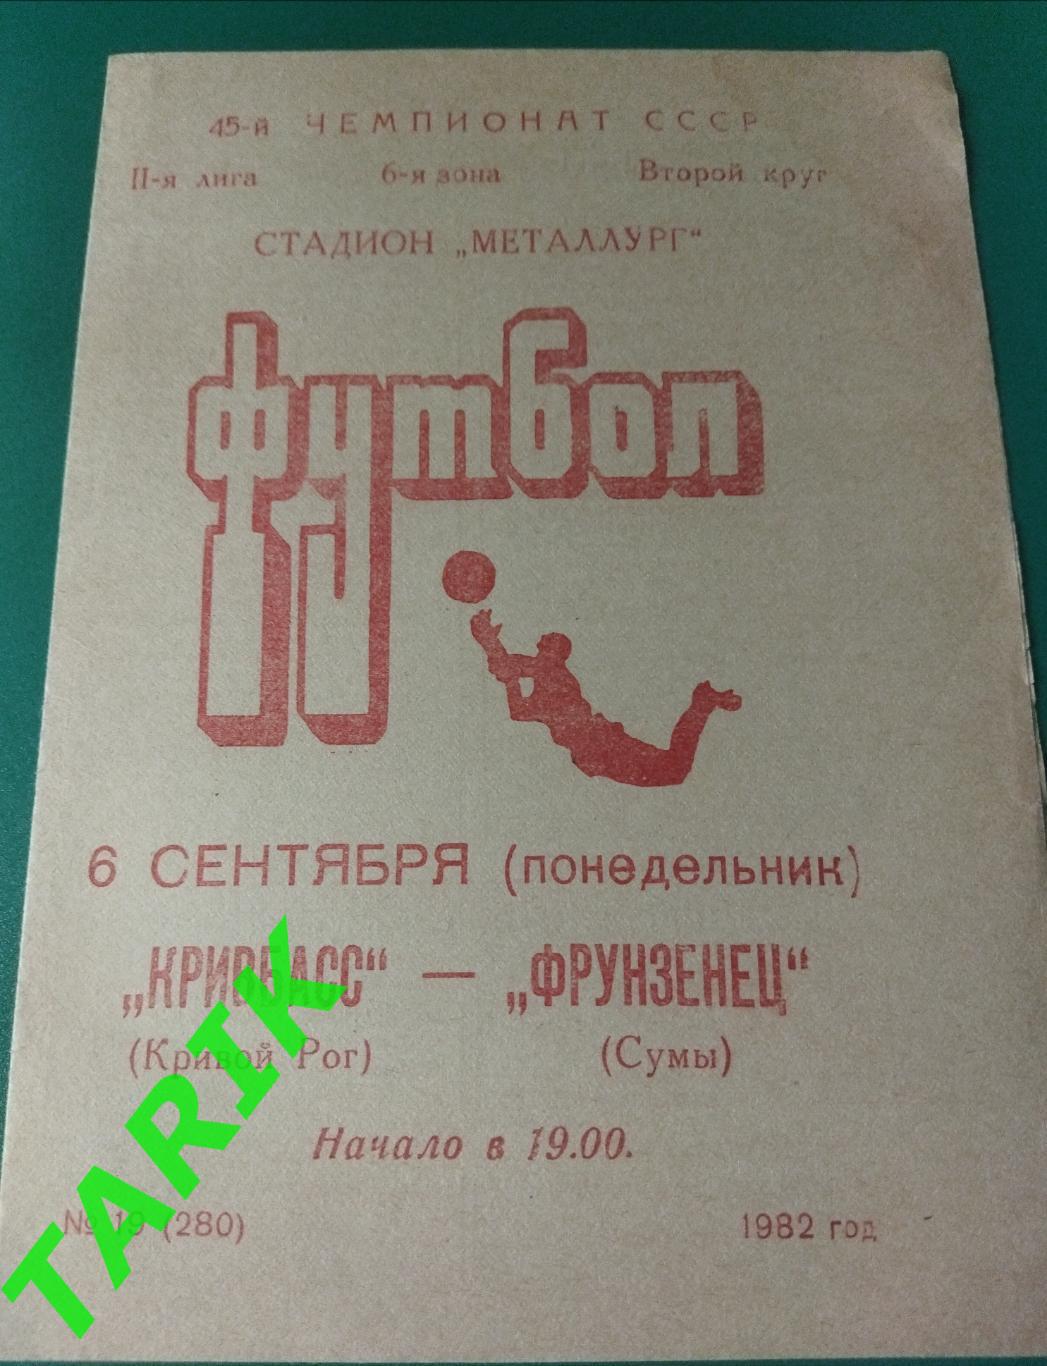 Кривбасс Кривой Рог- Фрунзенец Сумы 1982